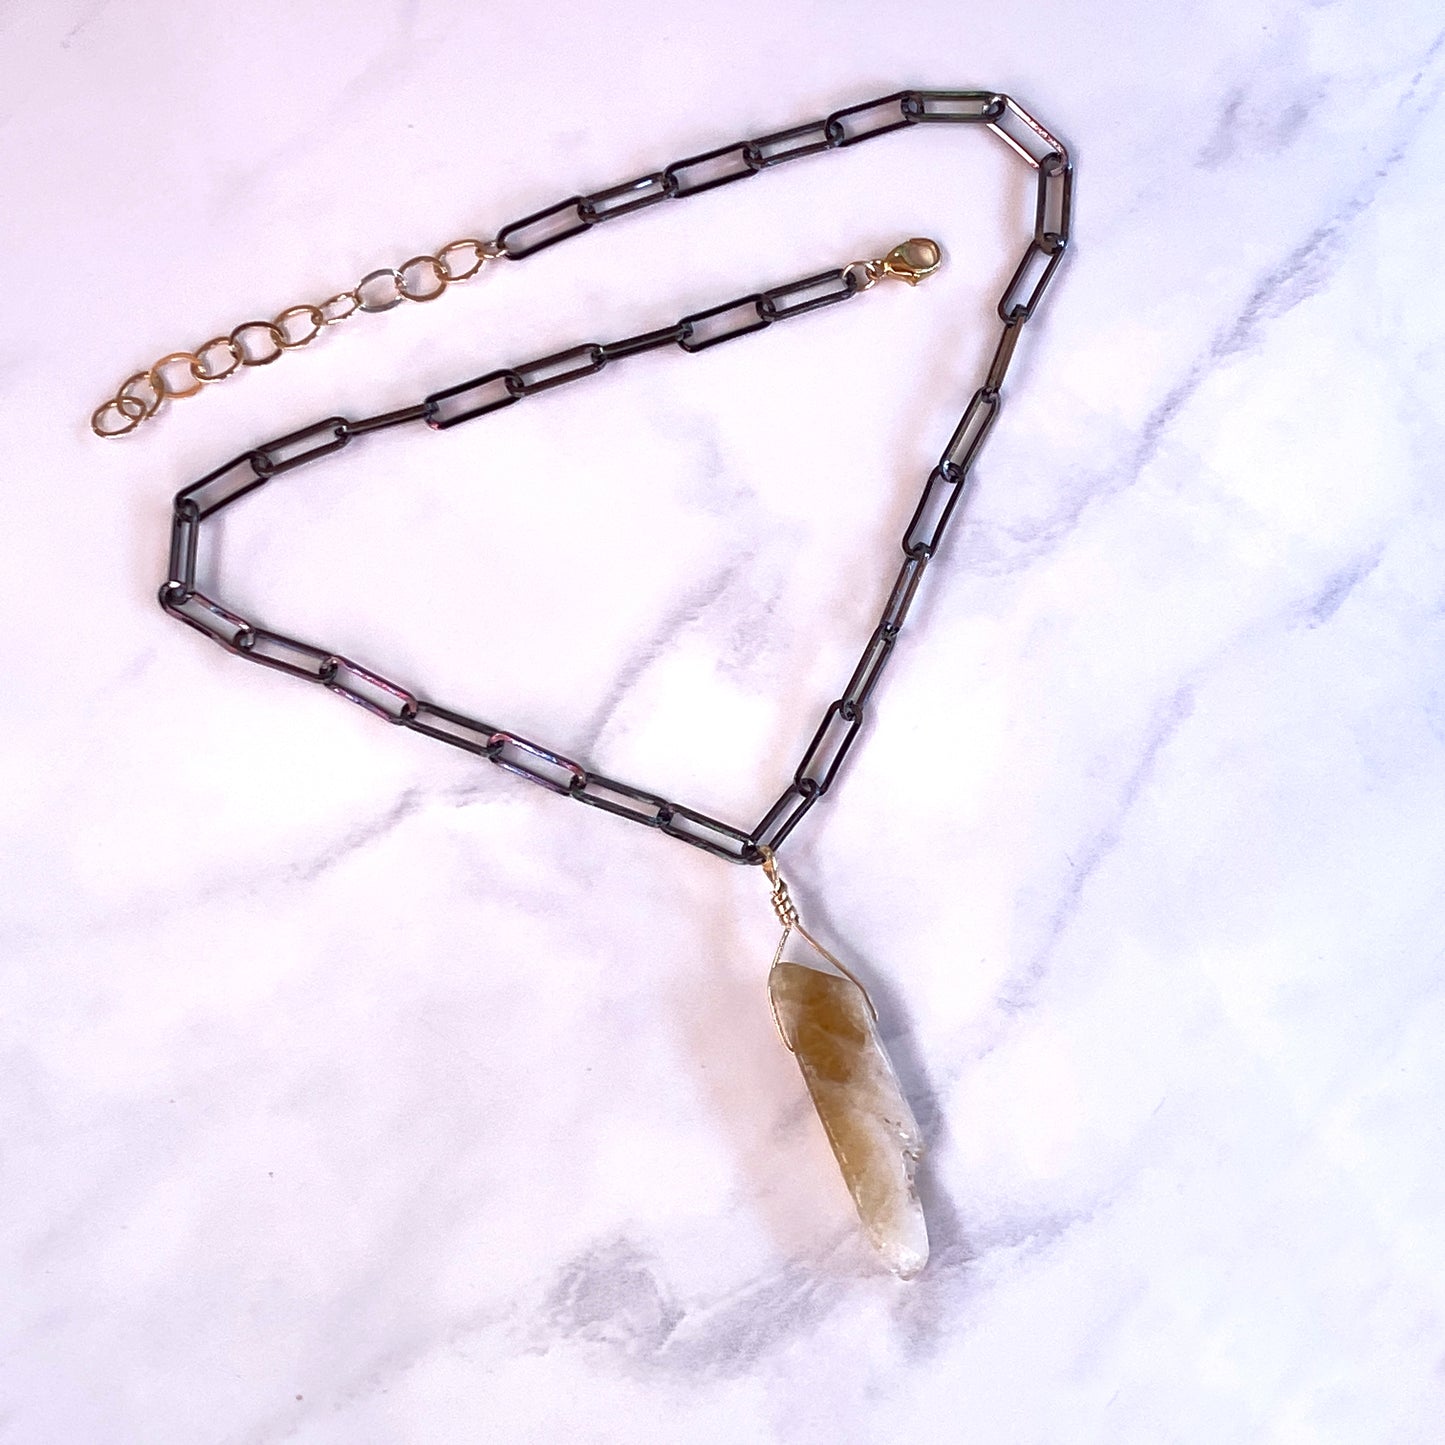 Raw Citrine Gemstone chain Necklace